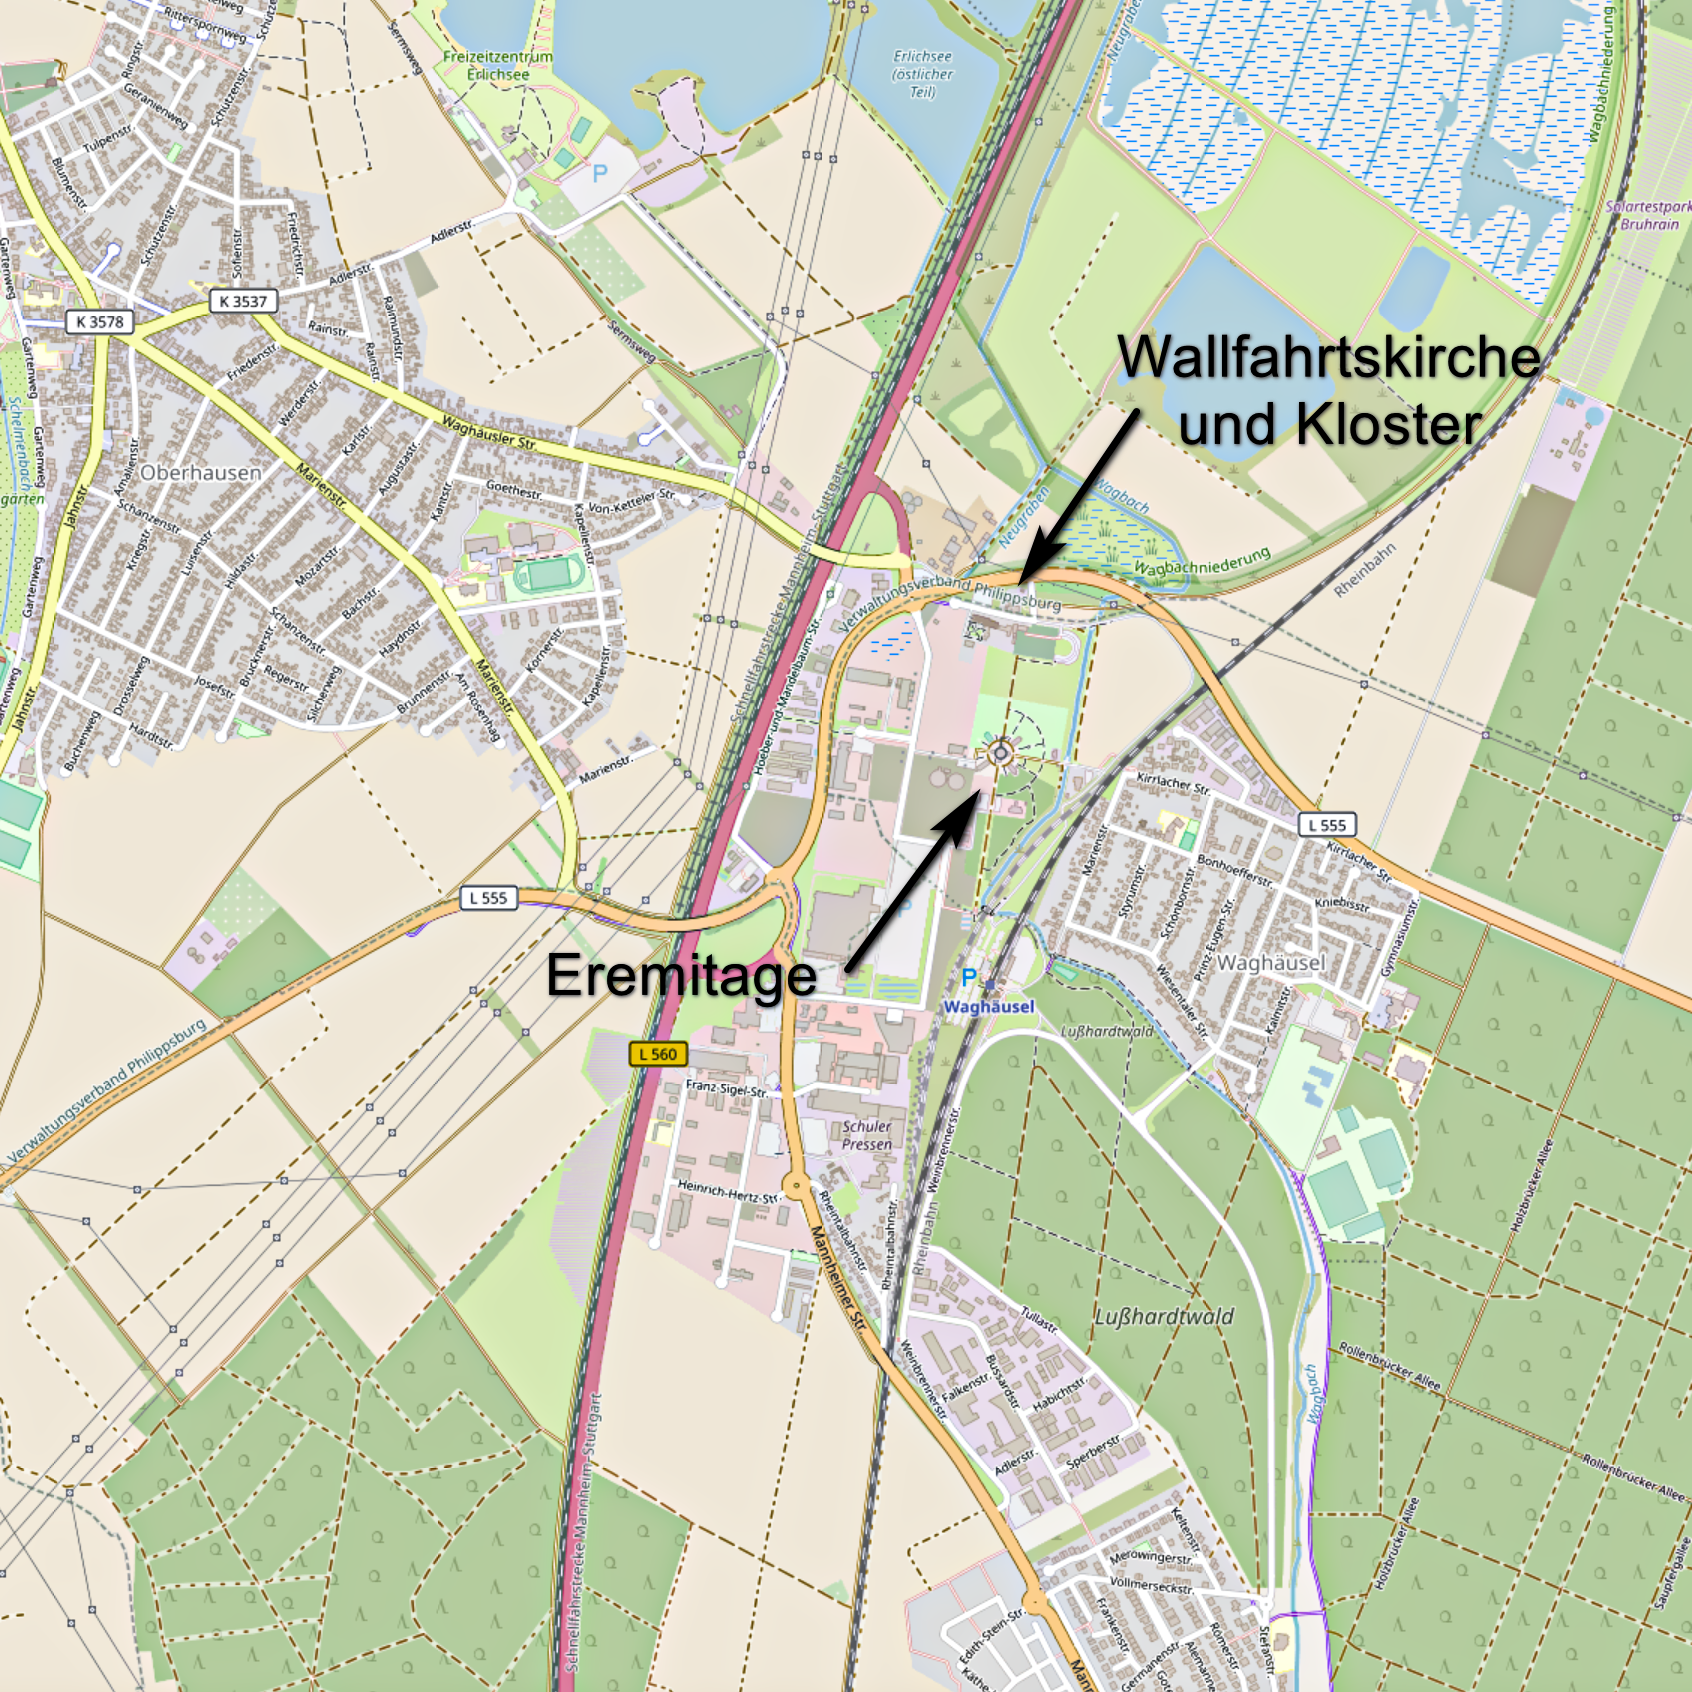 Karte von Waghäusel mit Hinweisen auf die Eremitage und die Wallfahrtskirche und das Kloster (Karte: © OpenStreetMap-Mitwirkende; Lizenz: Namensnennung - Weitergabe unter gleichen Bedingungen 2.0 Generic (CC BY-SA 2.0); siehe: www.openstreetmap.org/copyright)